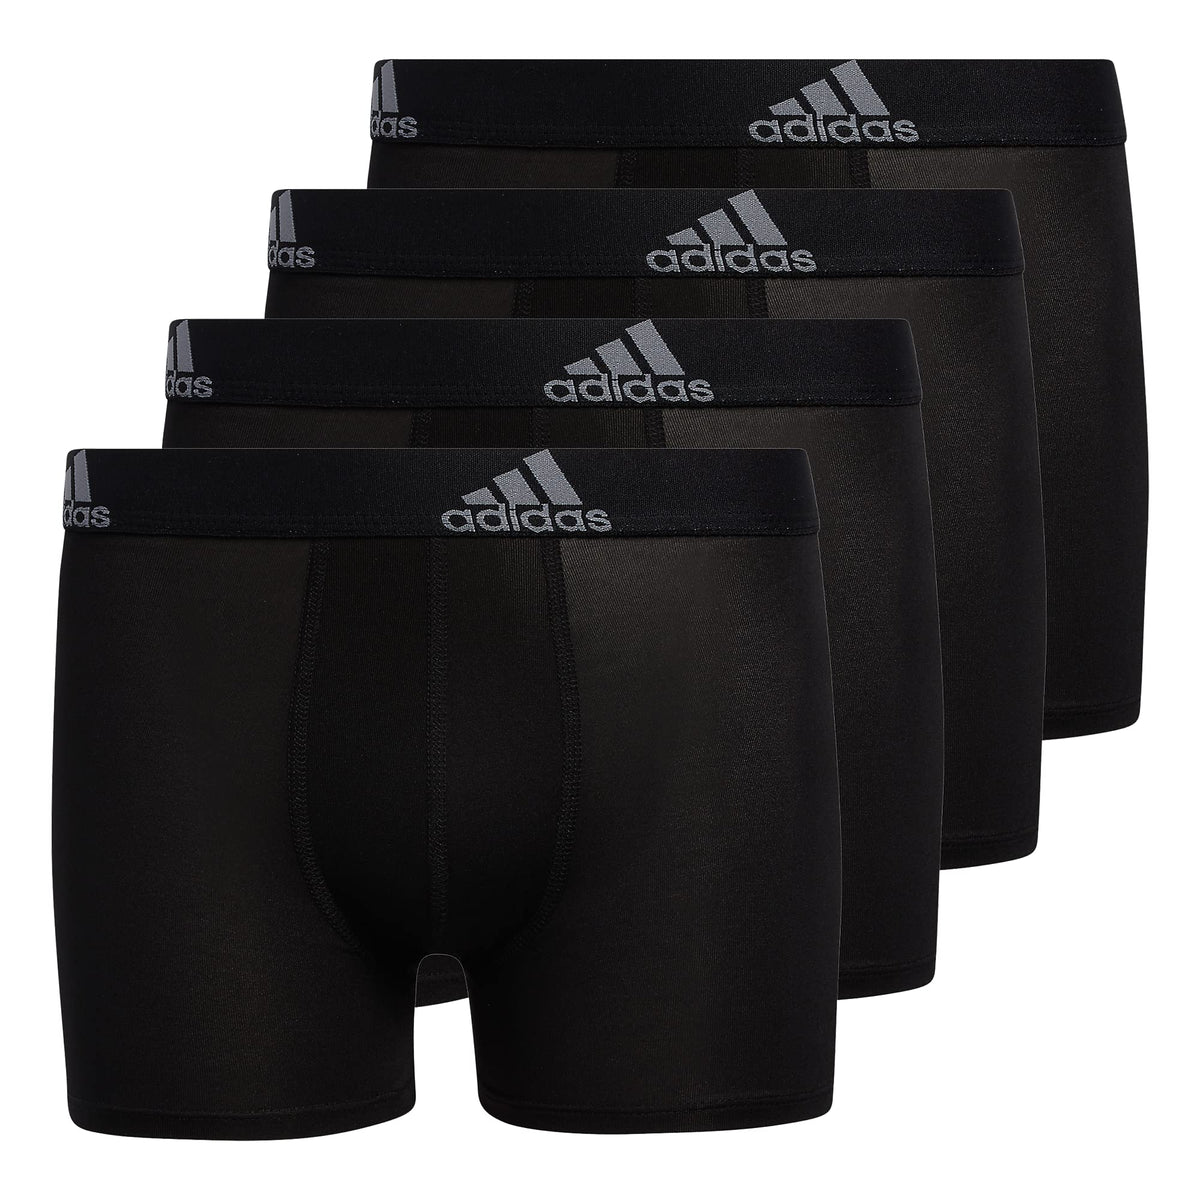 adidas Kids-Boy's Performance Boxer Briefs Underwear (4-Pack), Black/Grey, Large